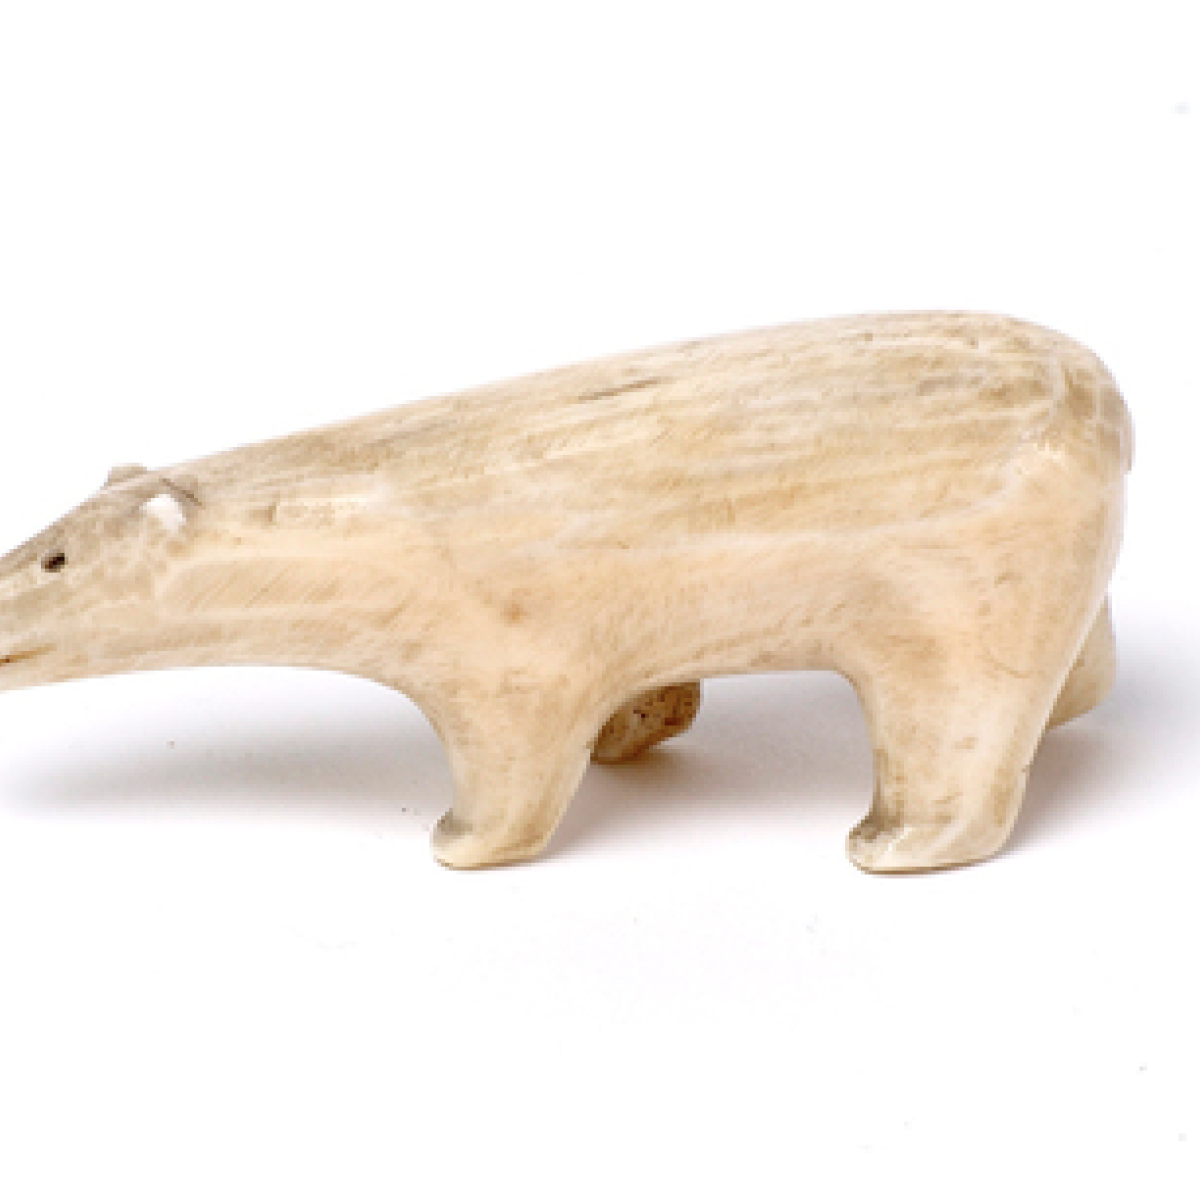 A Polar Bear Carved From Bone